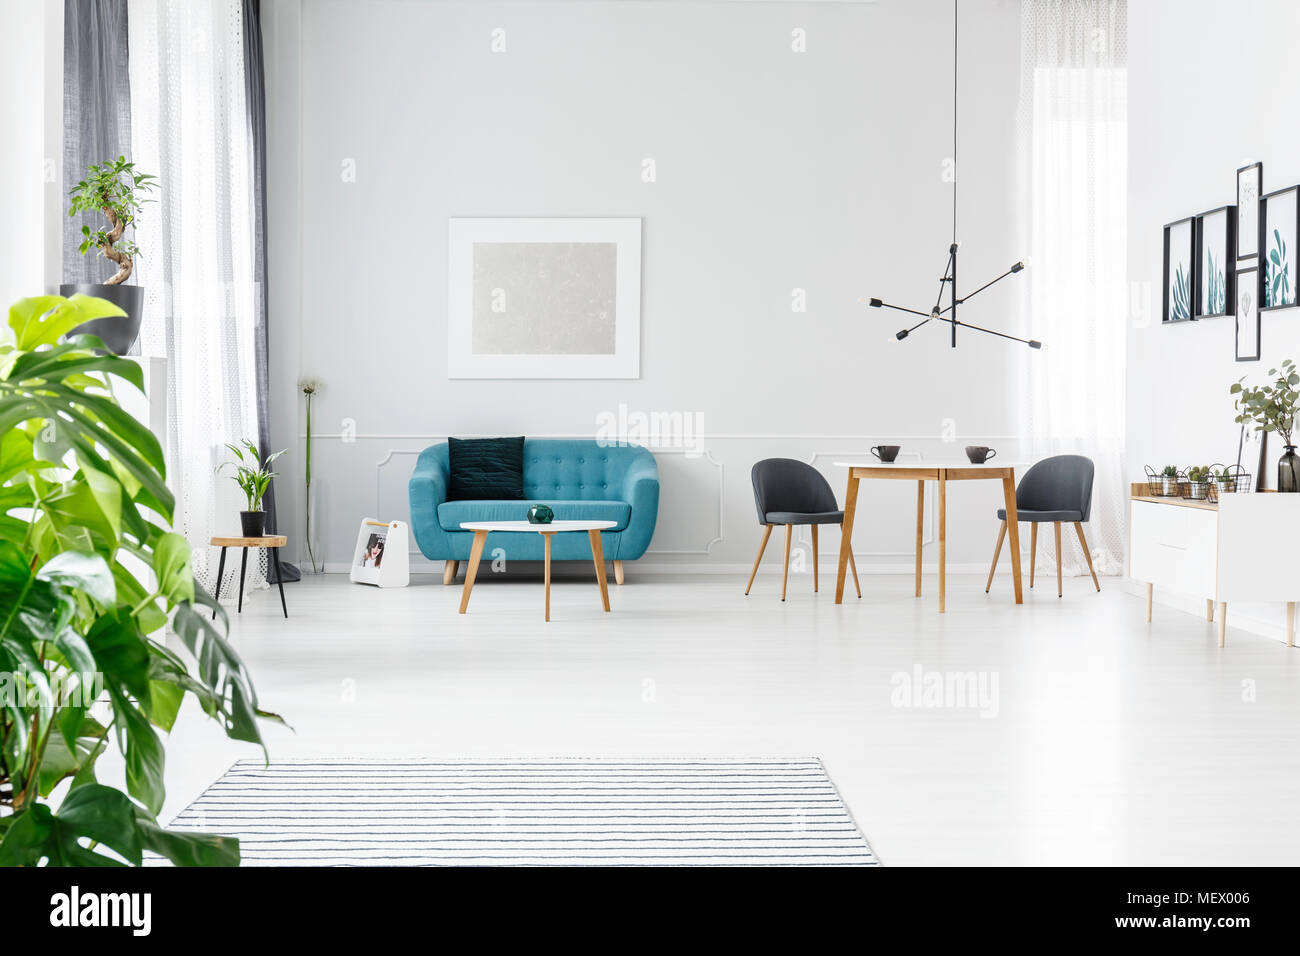 Helle, geräumige und elegante Wohnung zum Verkauf mit Plakaten, Kaffeetassen auf Holztisch und Türkise couch Stockfoto